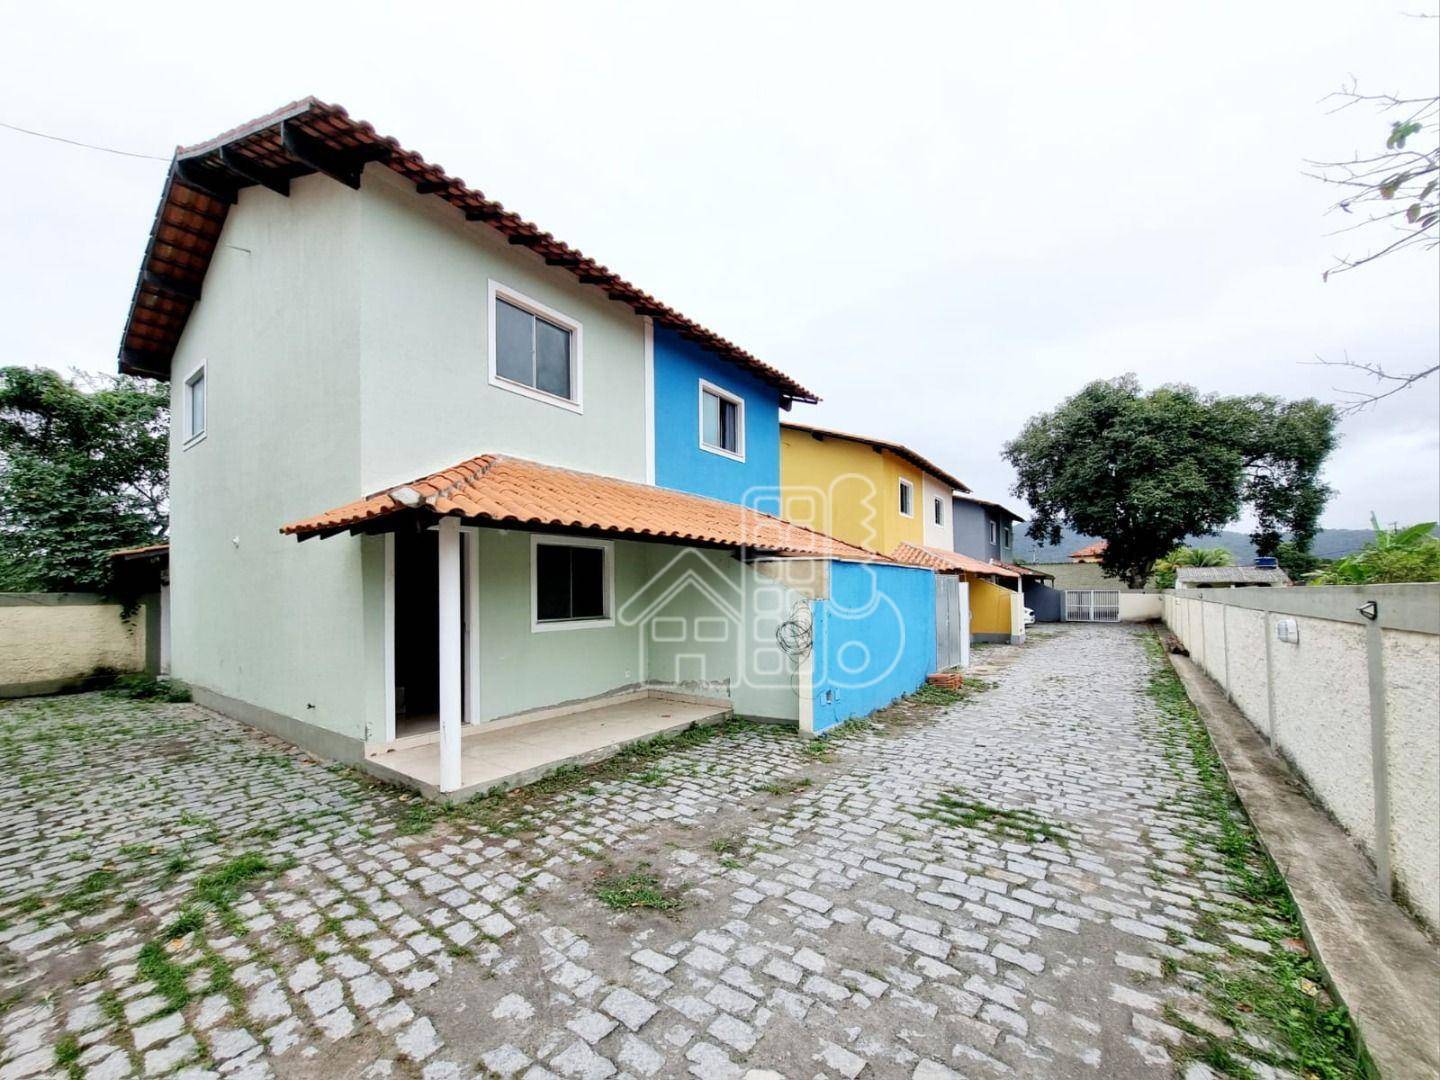 Casa com 2 quartos à venda, 67 m² por R$ 250.000 - Inoã - Maricá/RJ